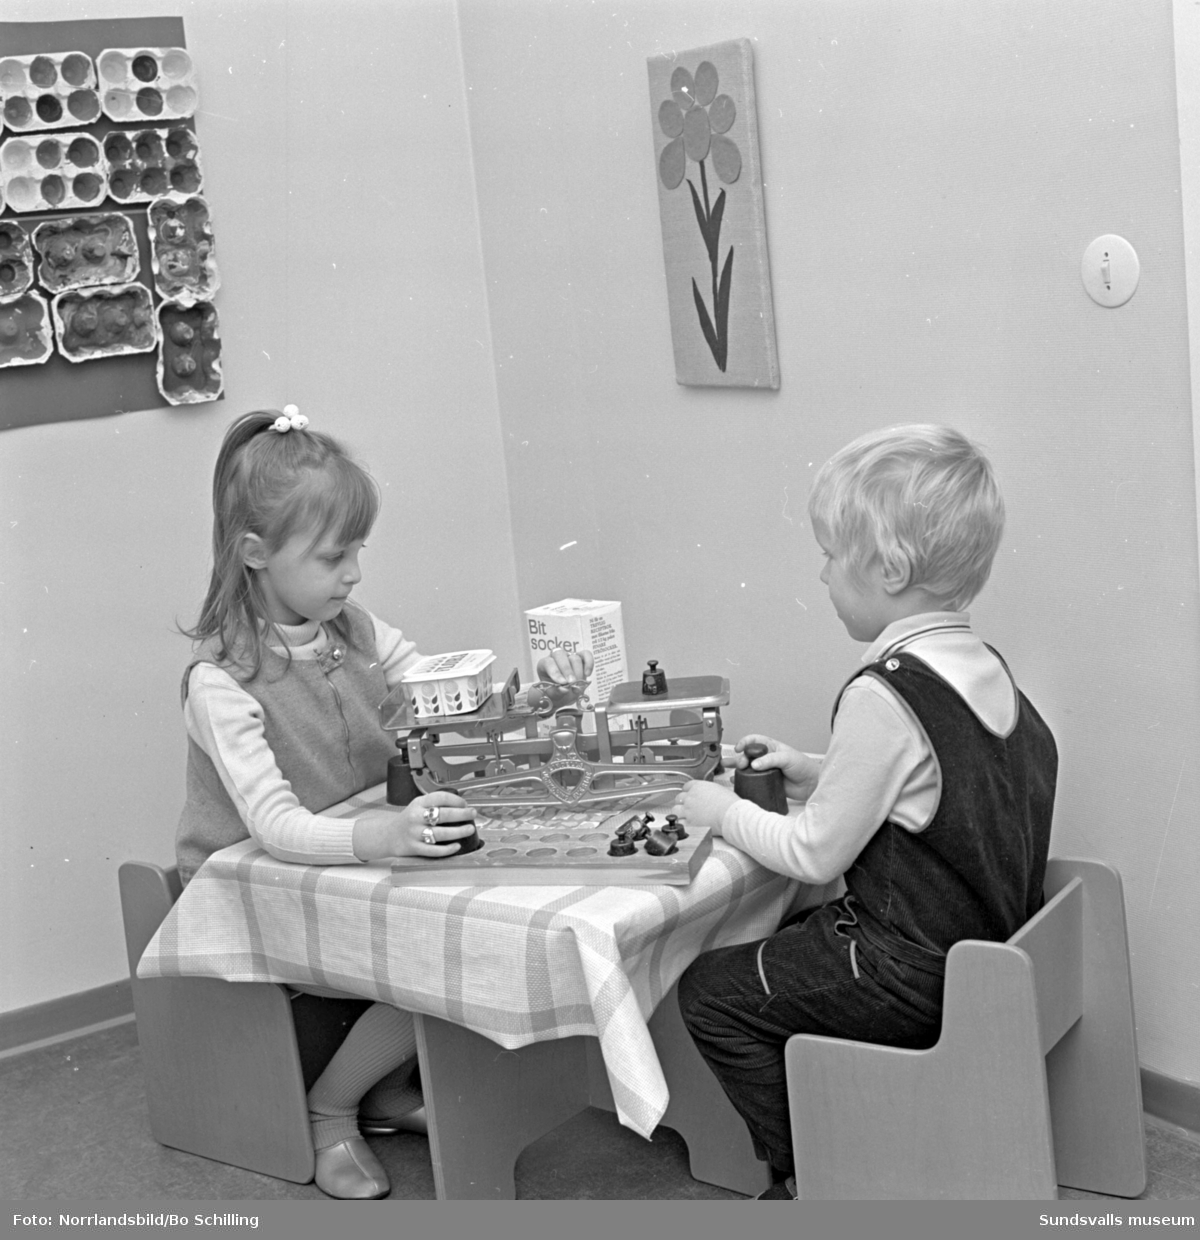 Interiör från barnstugan i västra Skönsberg, fotograferat för centrala byggnadskommittén.